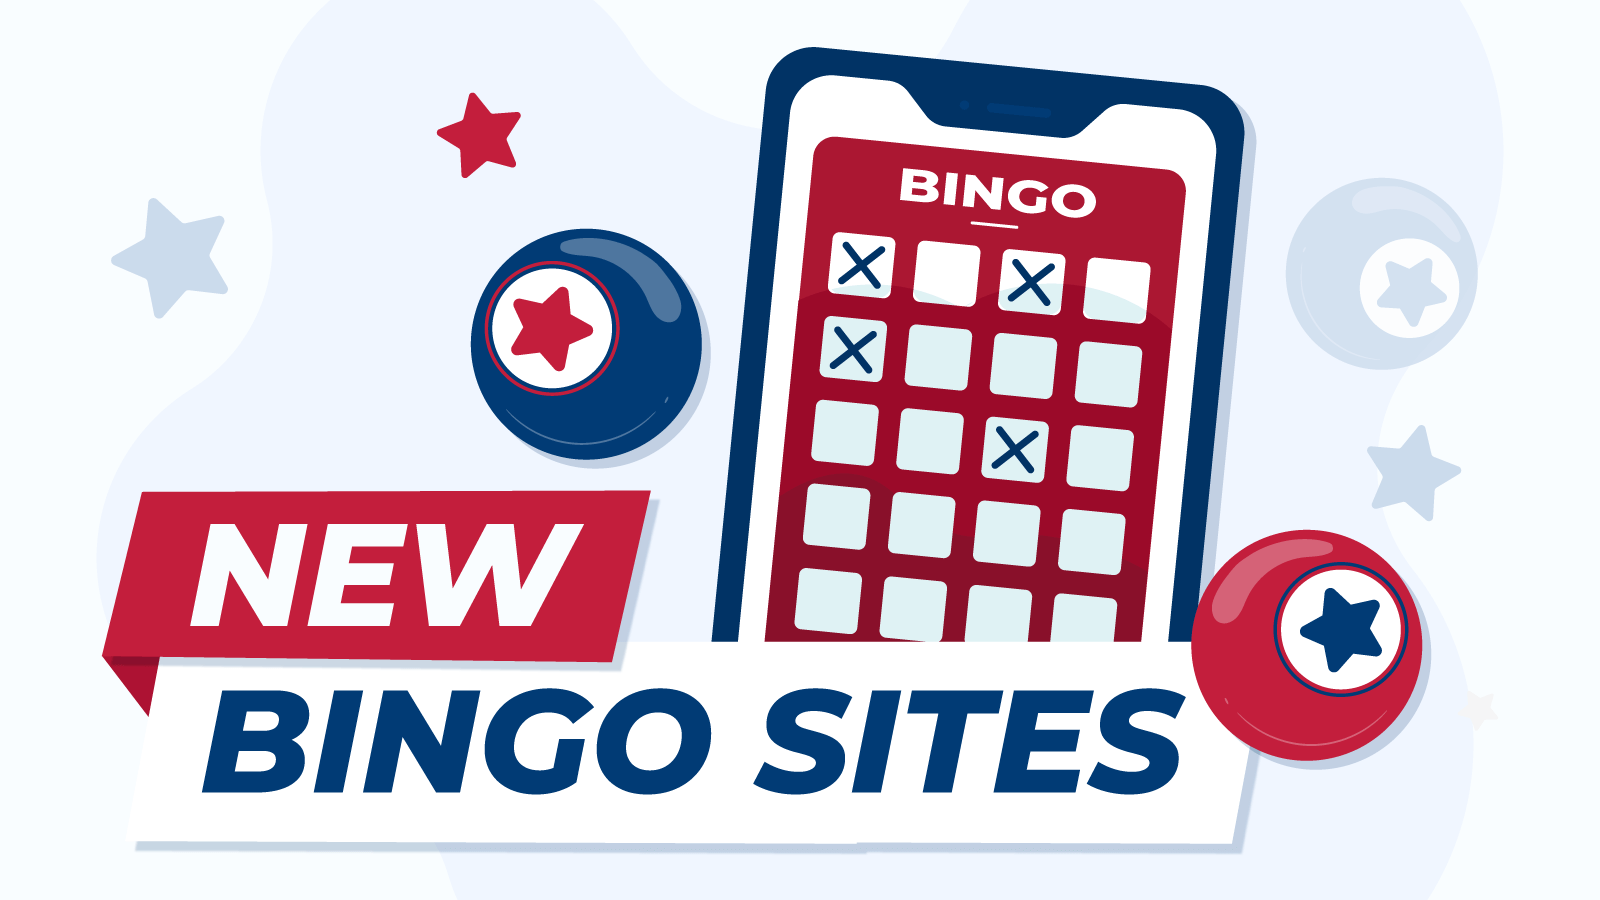 Best online bingo sites uk games skilled visiting particular